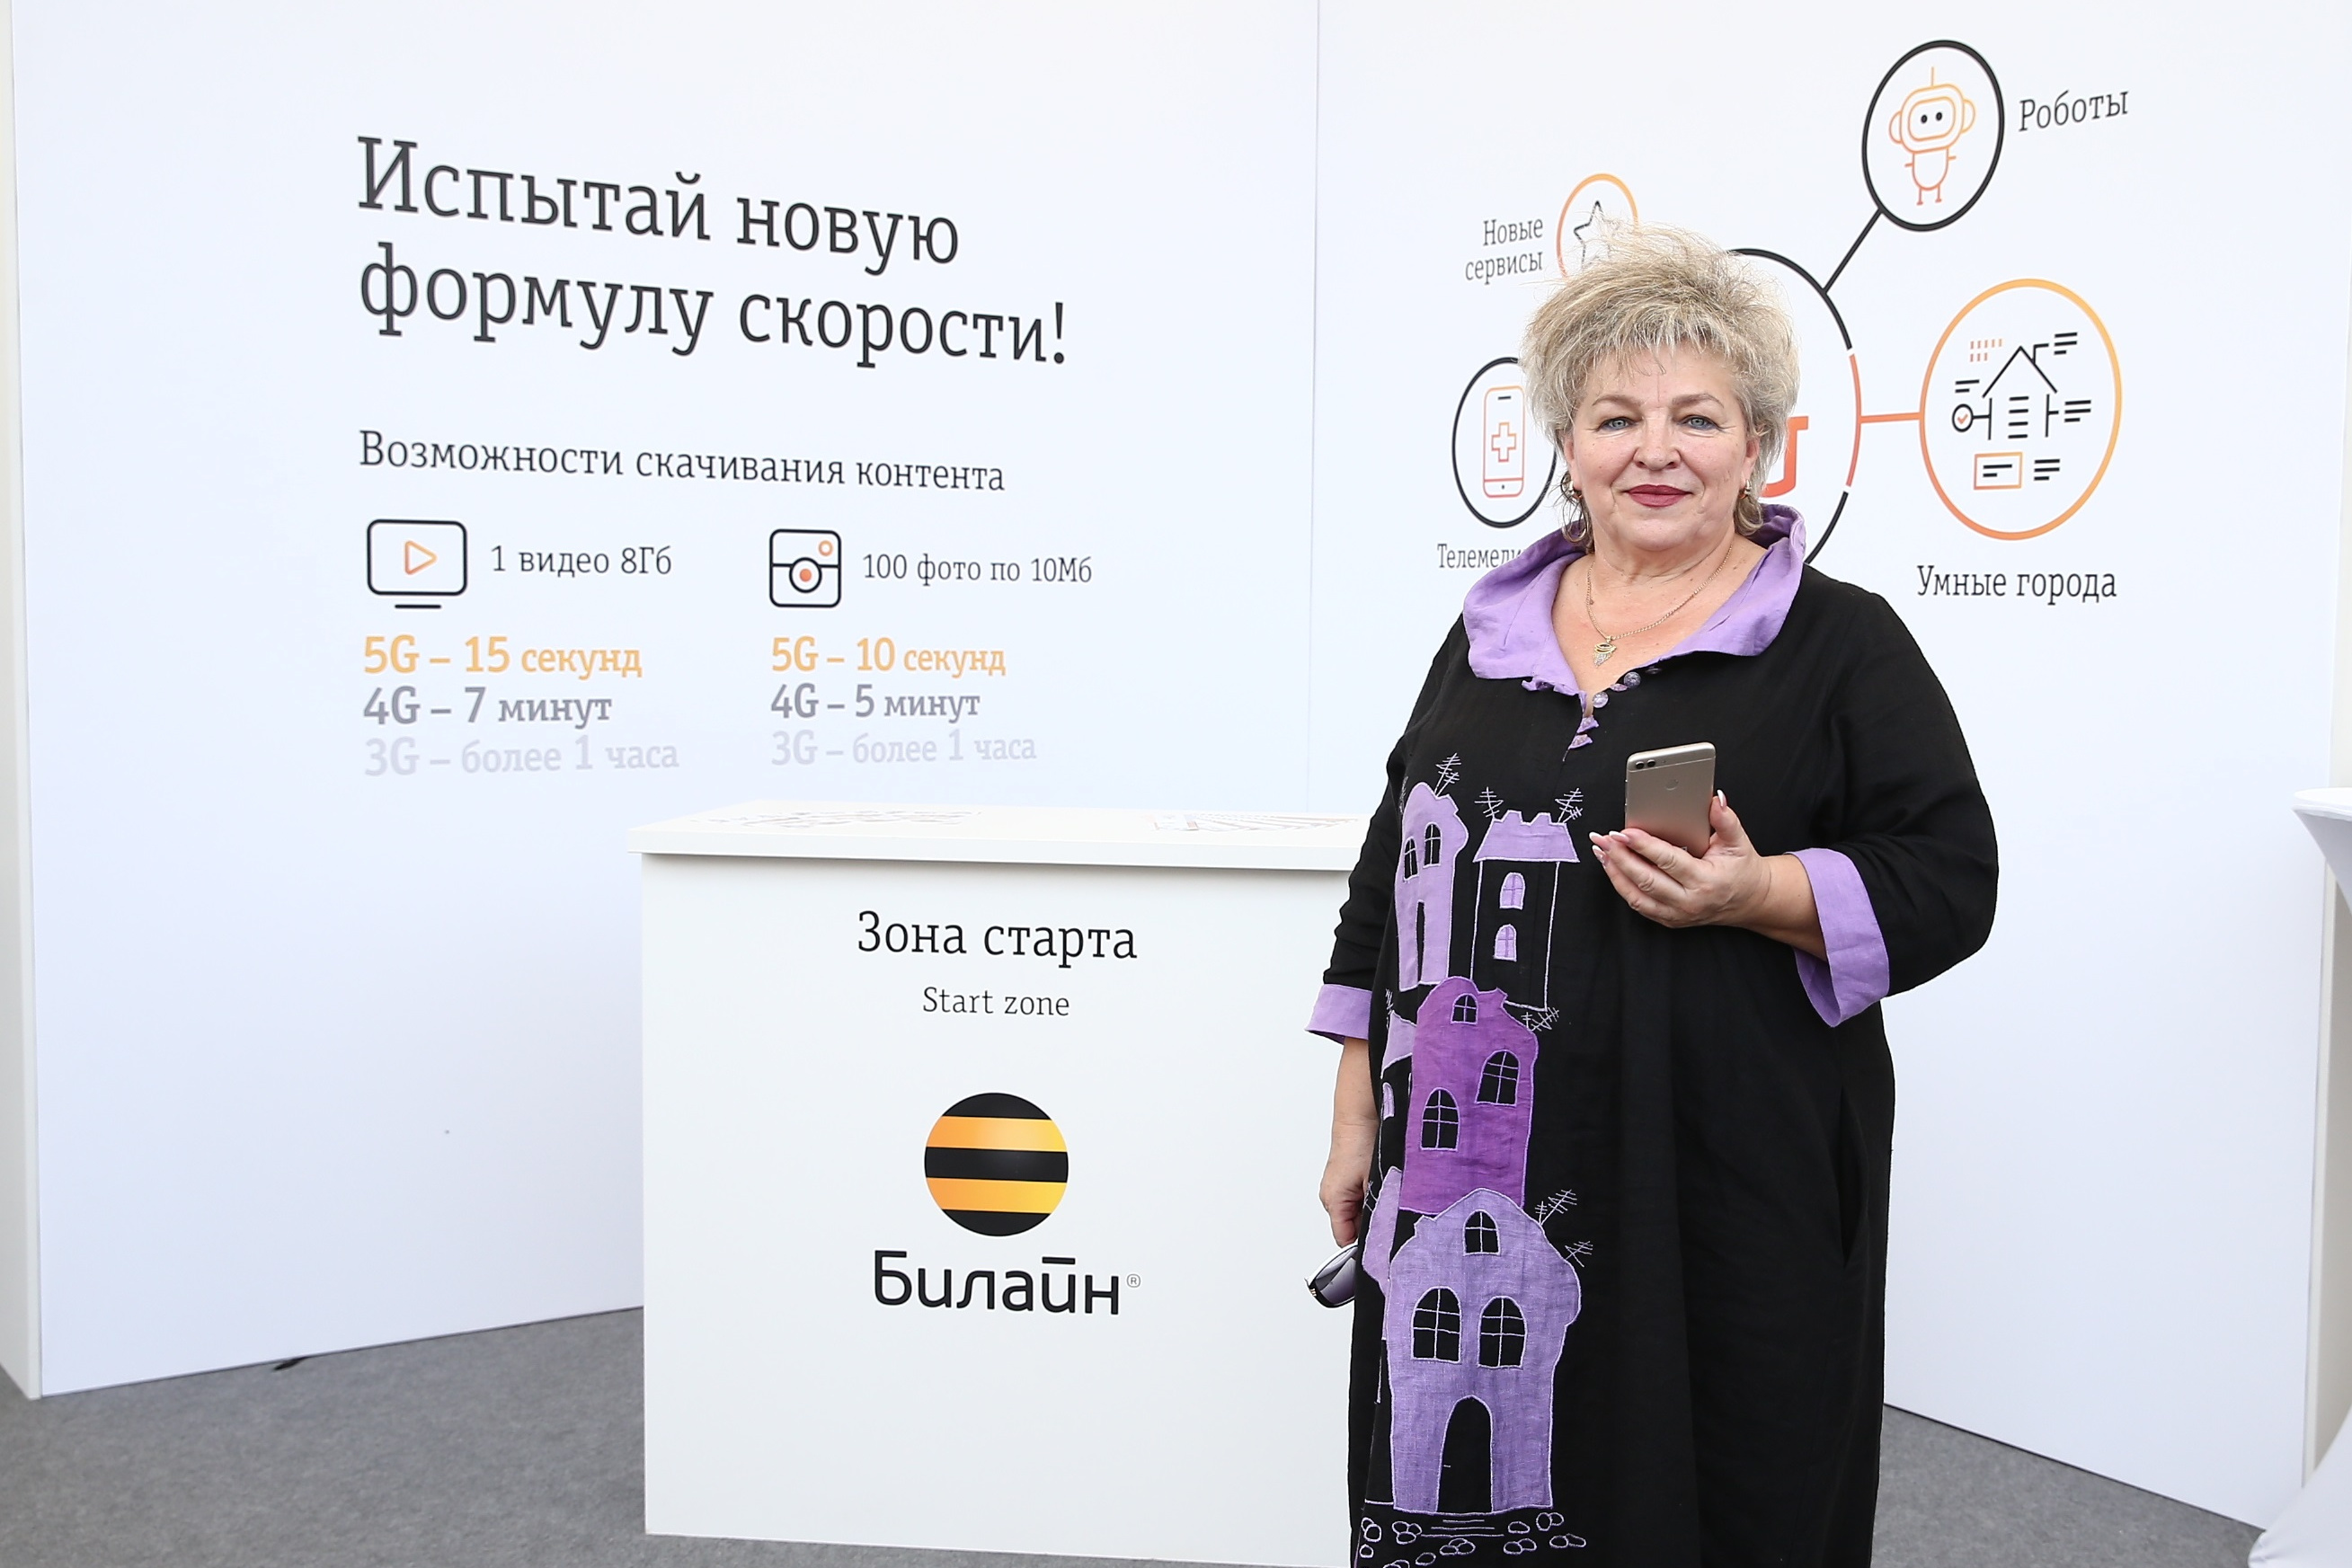 К «Социальному пакету» Билайн для студентов и пенсионеров подключилось более 200 000 человек - 31 октября 2019 - v1.ru